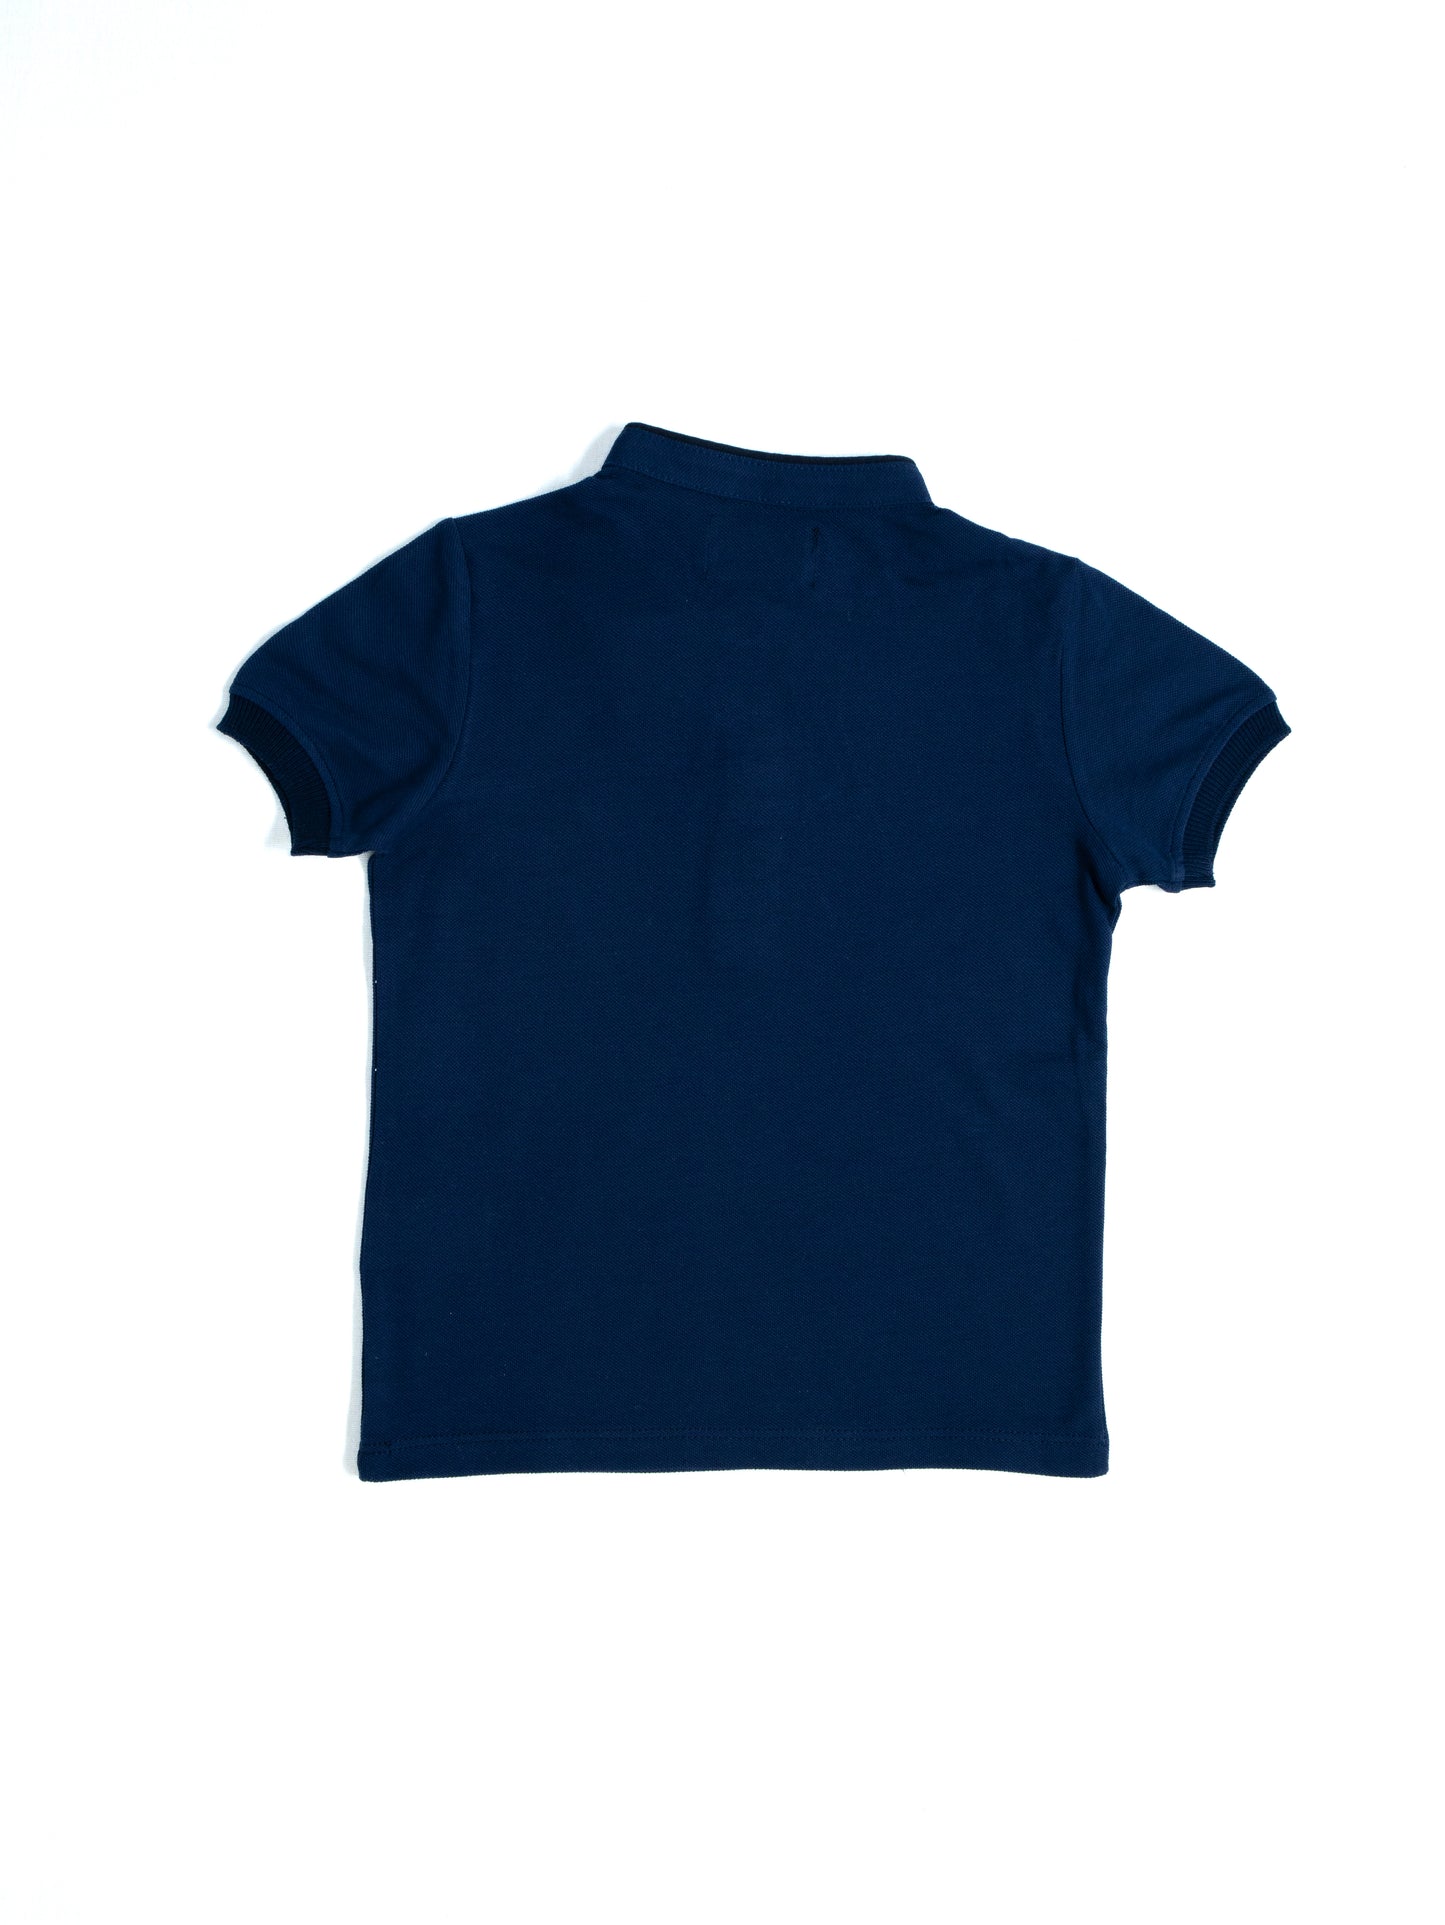 Детская футболка-поло из 100% хлопка с вышивкой